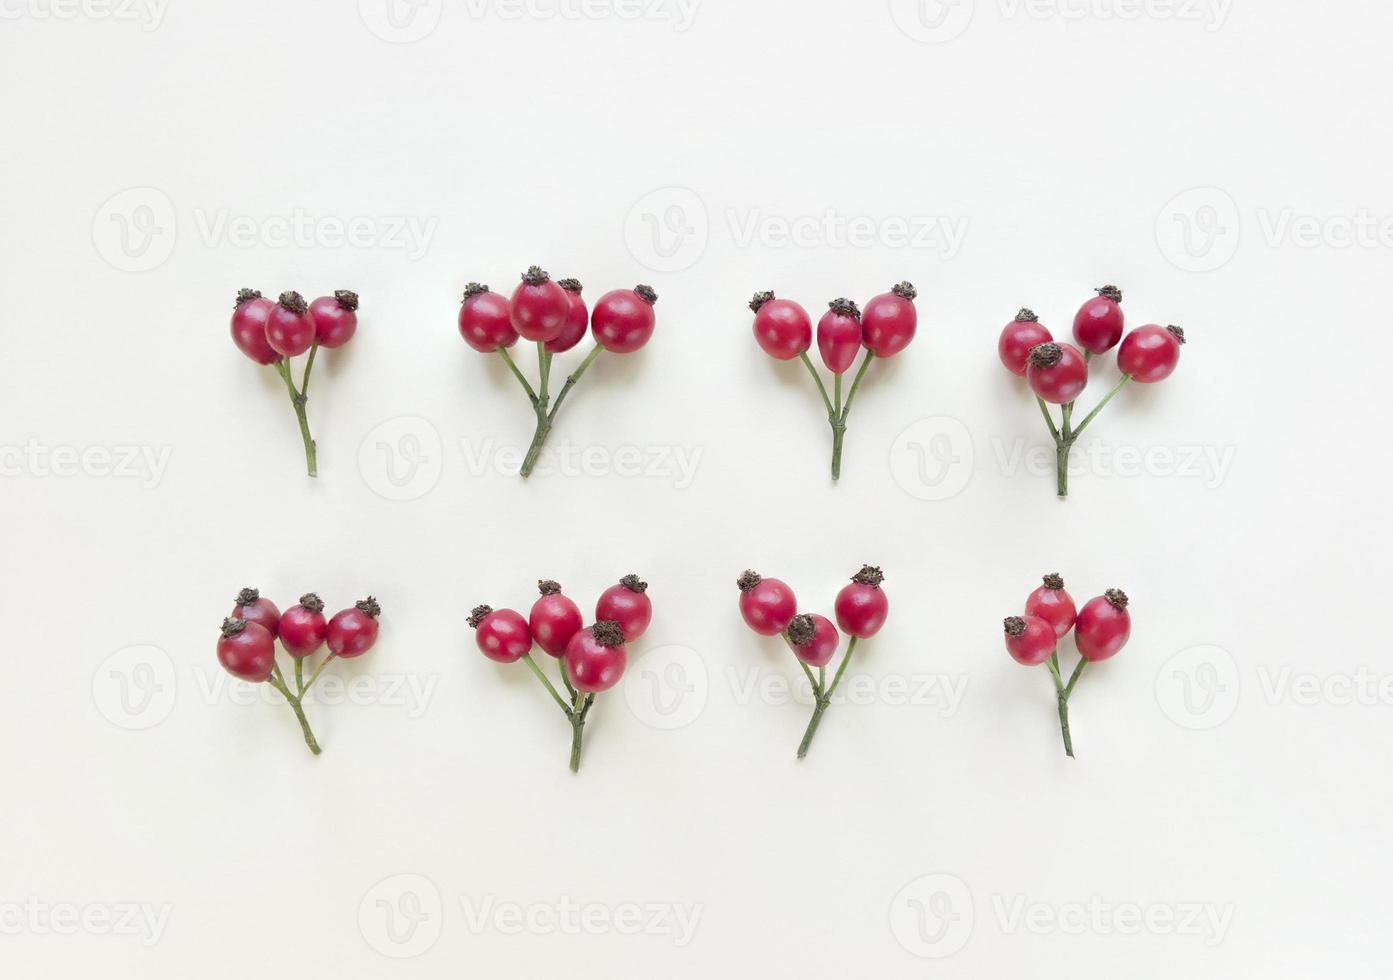 rozenbottels takken op een beige achtergrond symmetrie plat leggen foto